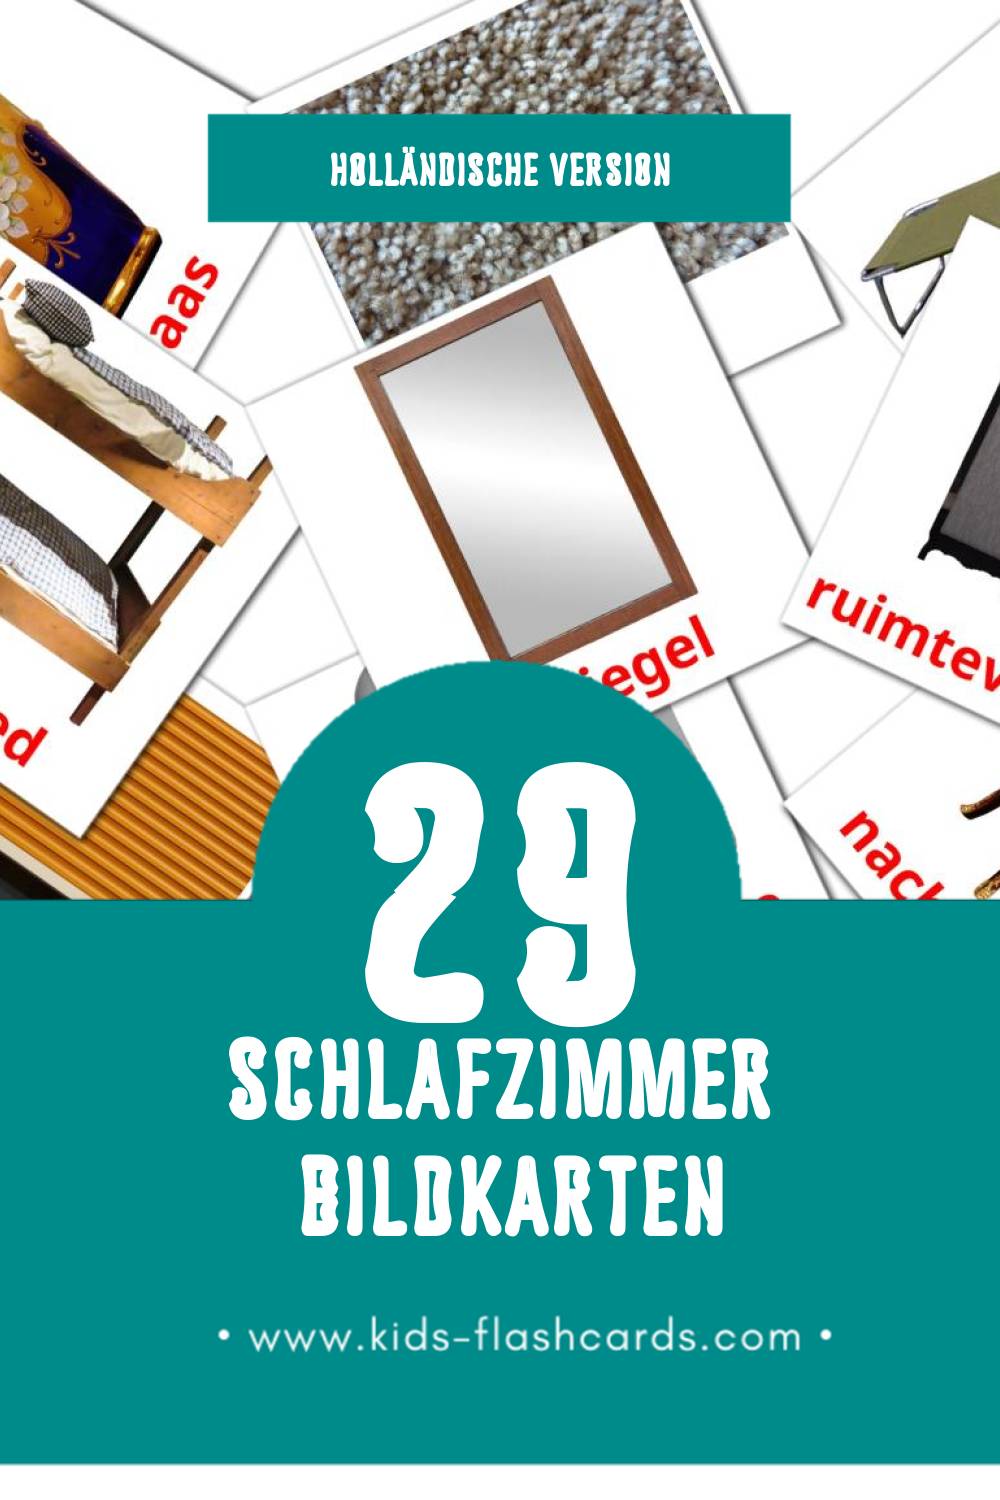 Visual Slaapkamer Flashcards für Kleinkinder (29 Karten in Holländisch)